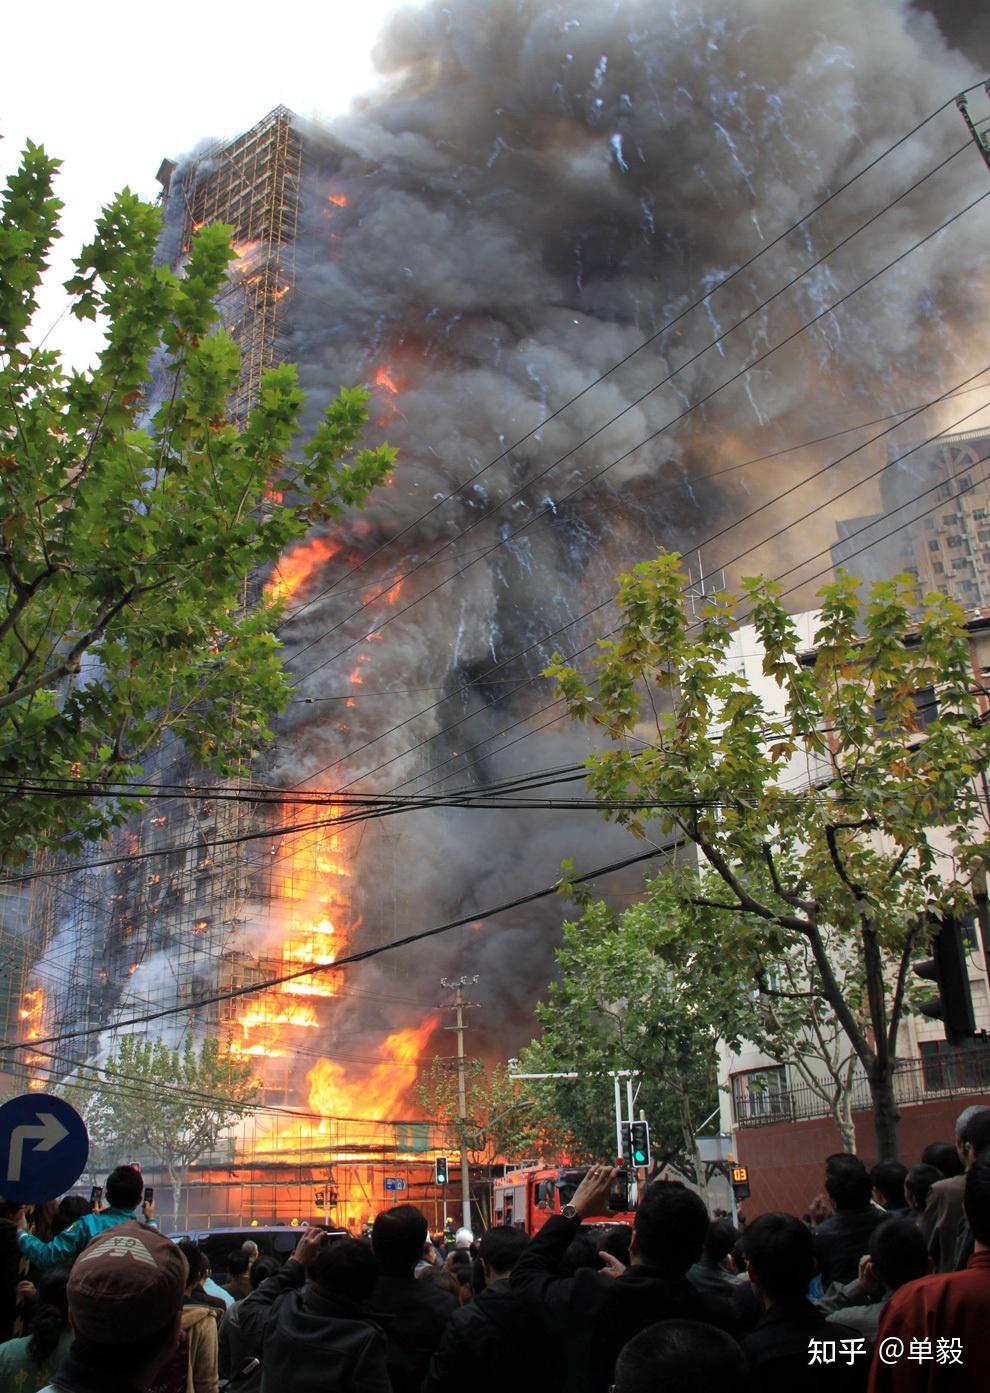 8月27日大连凯旋国际大厦失火目前现场情况如何